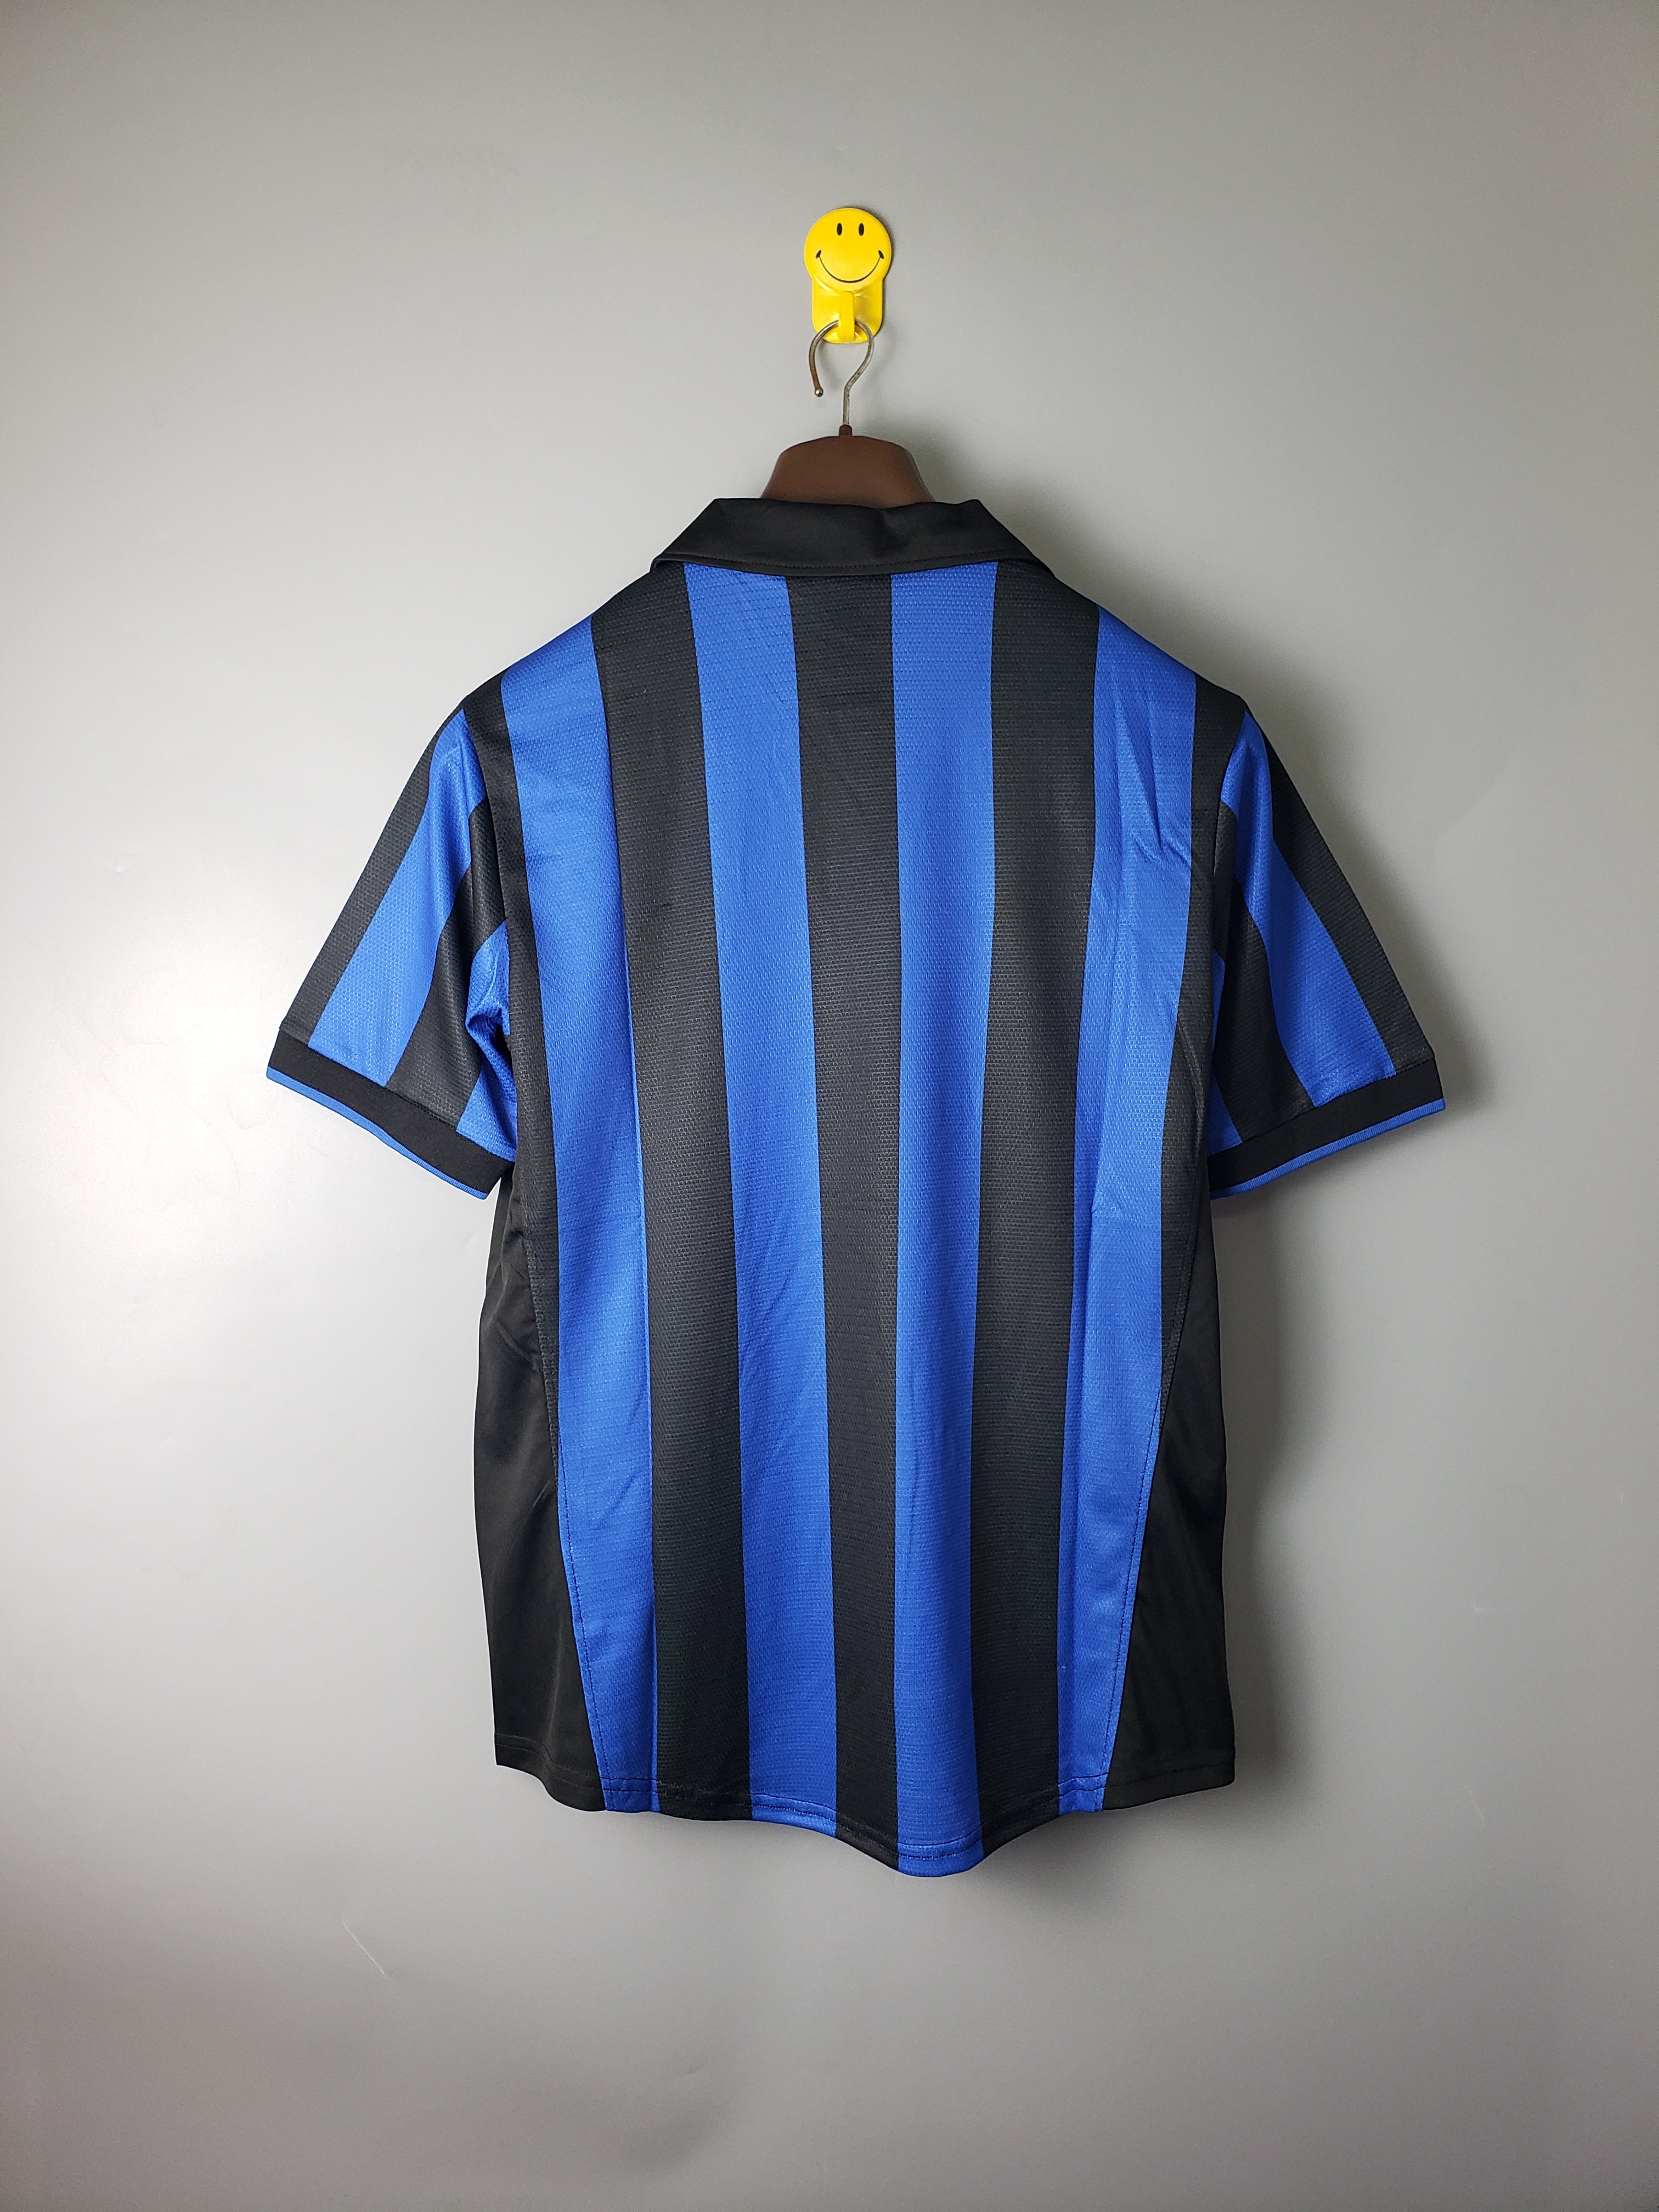 Inter Milan 1998-99 Home Jersey